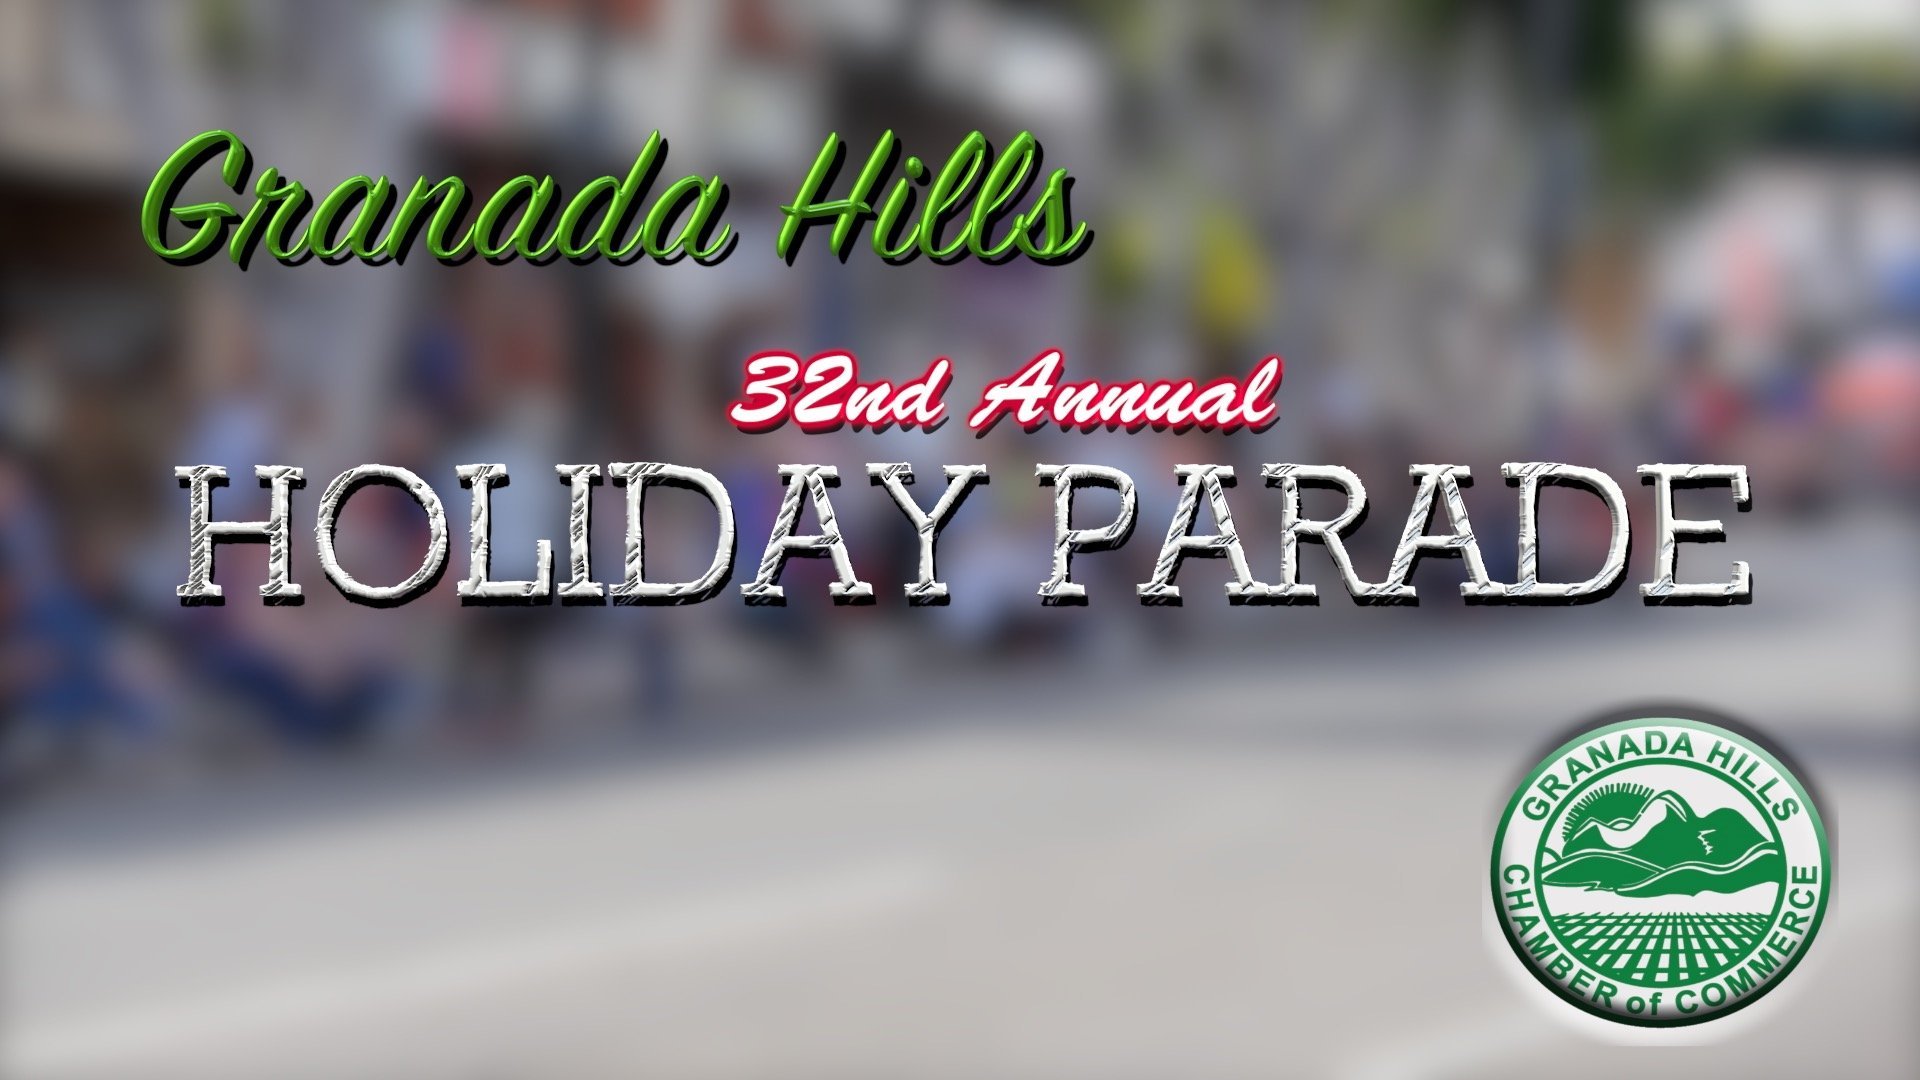 2015 Granada Hills Holiday Parade Video